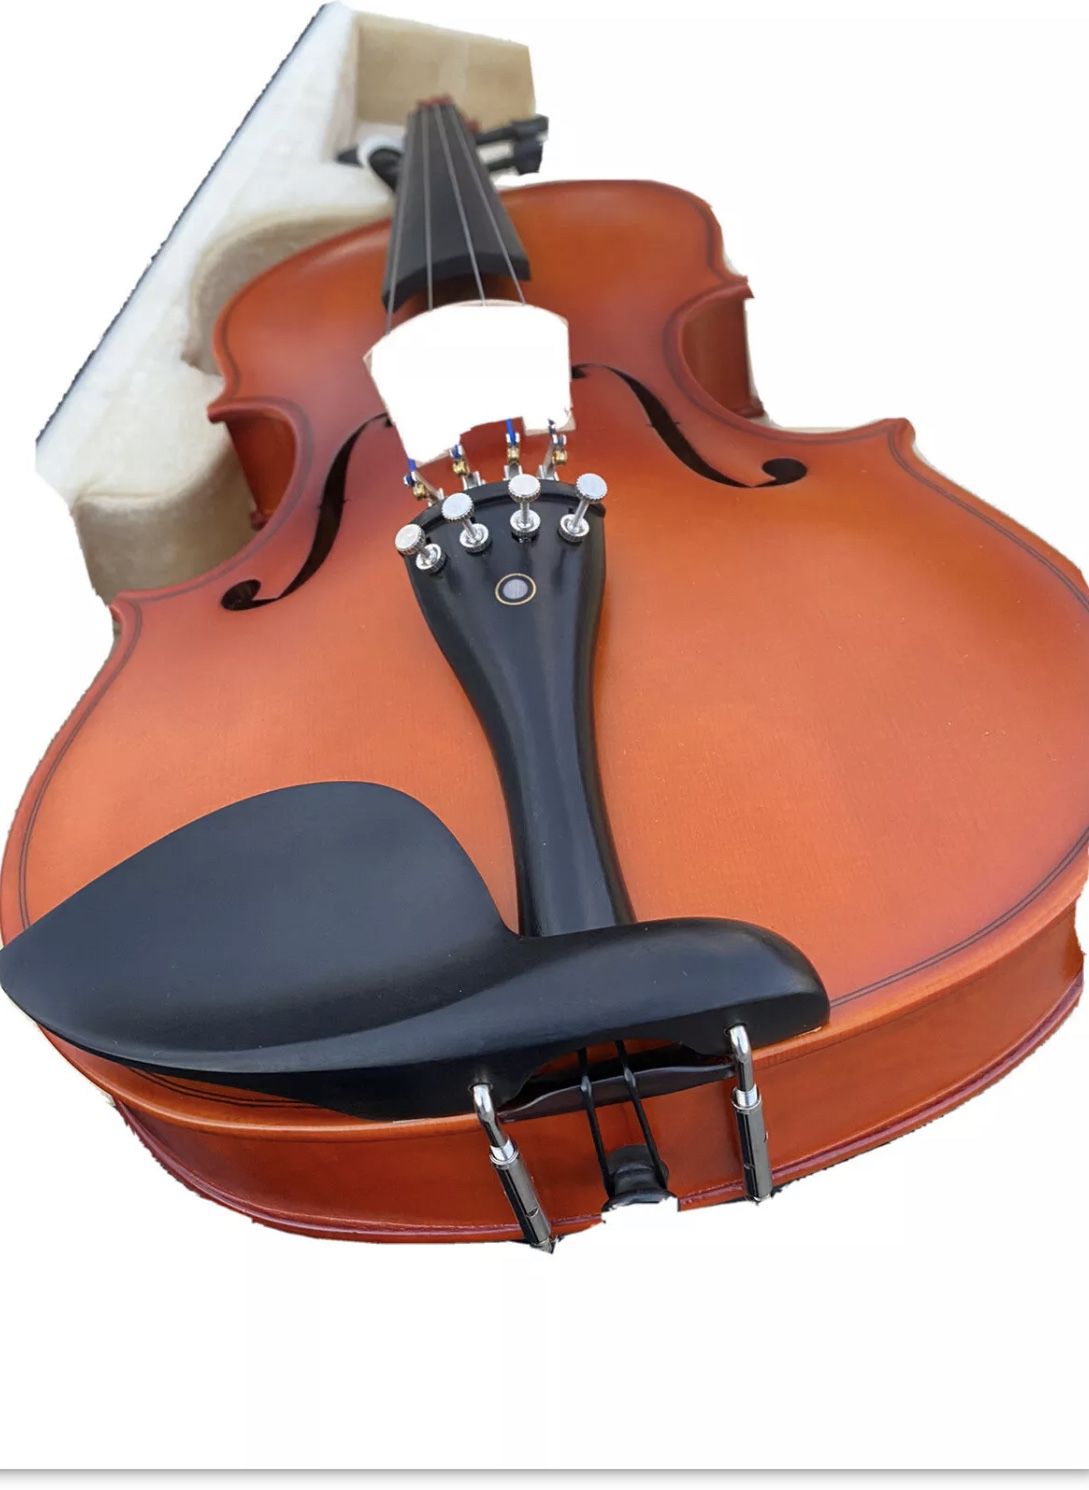 Cecilio CVN-300 Solid Wood Violin with Accessories